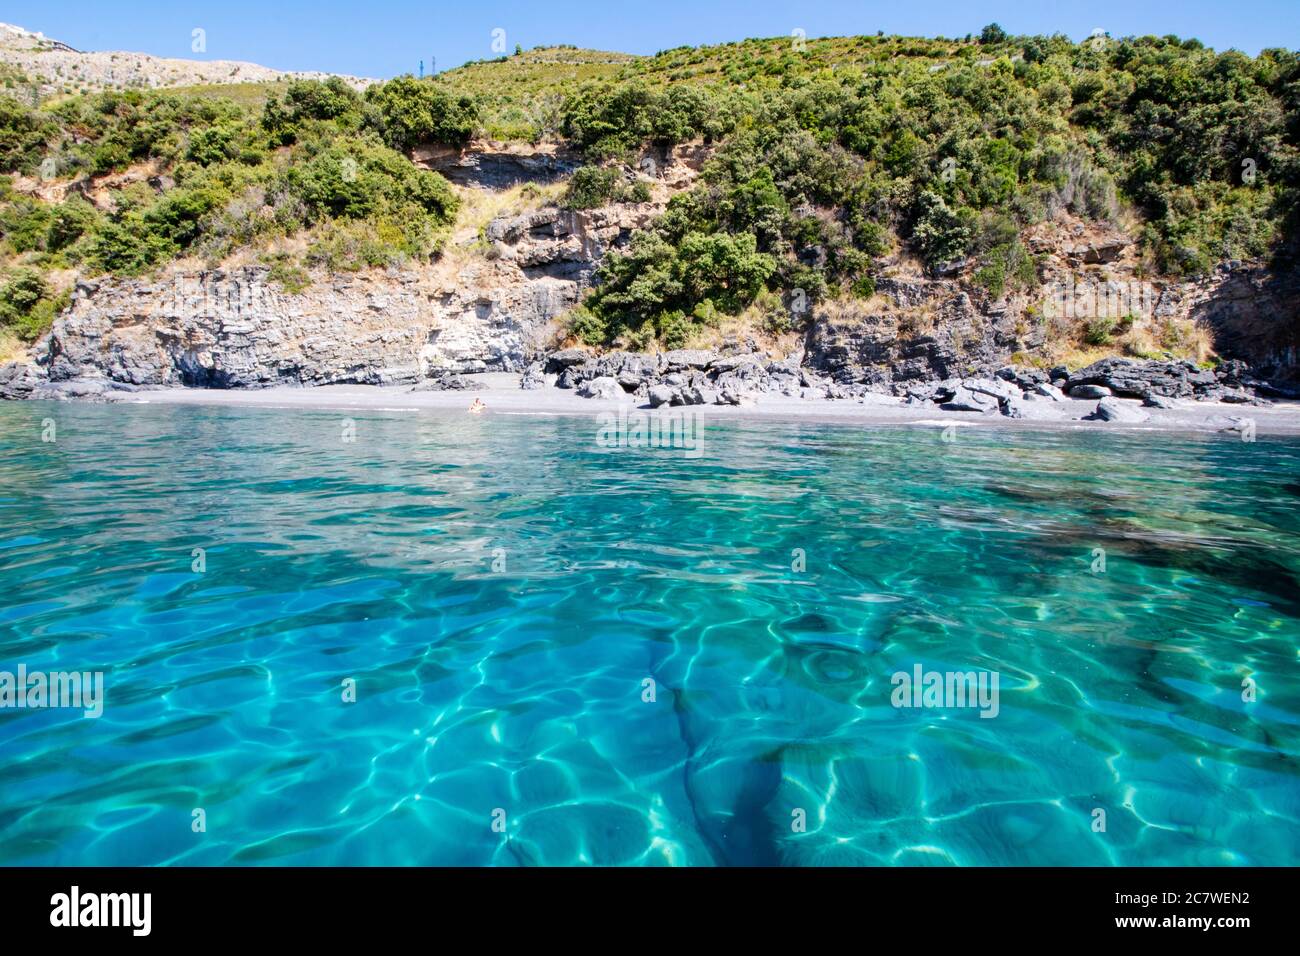 Scenic landscape of Maratea coastline in Basilicata, Italy Stock Photo